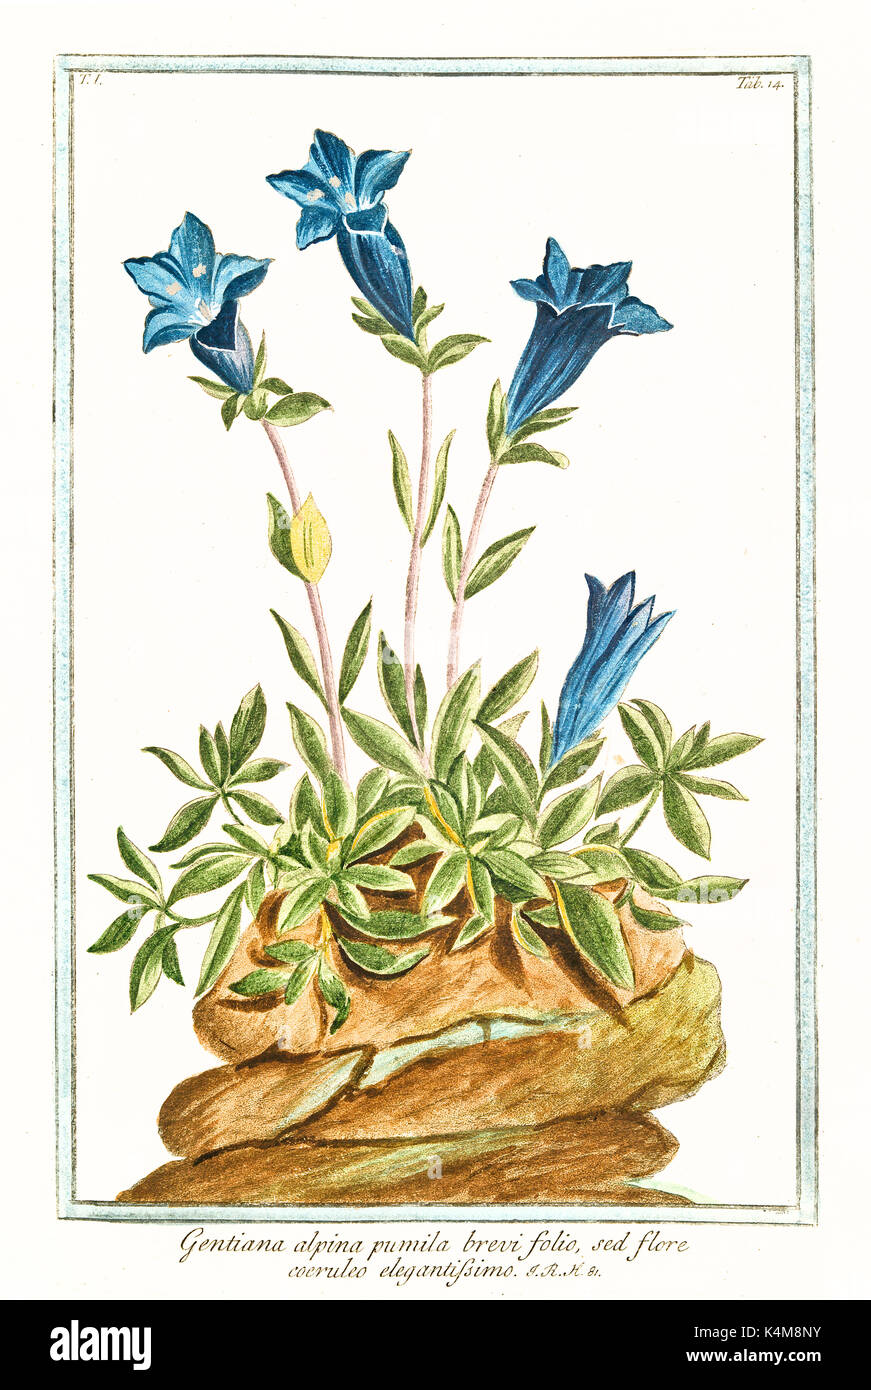 Vieille illustration de Gentiana alpina pumila brevi folio. Par G. Bonelli sur Hortus Romanus, publ. N. Martelli, Rome, 1772 - 93 Banque D'Images